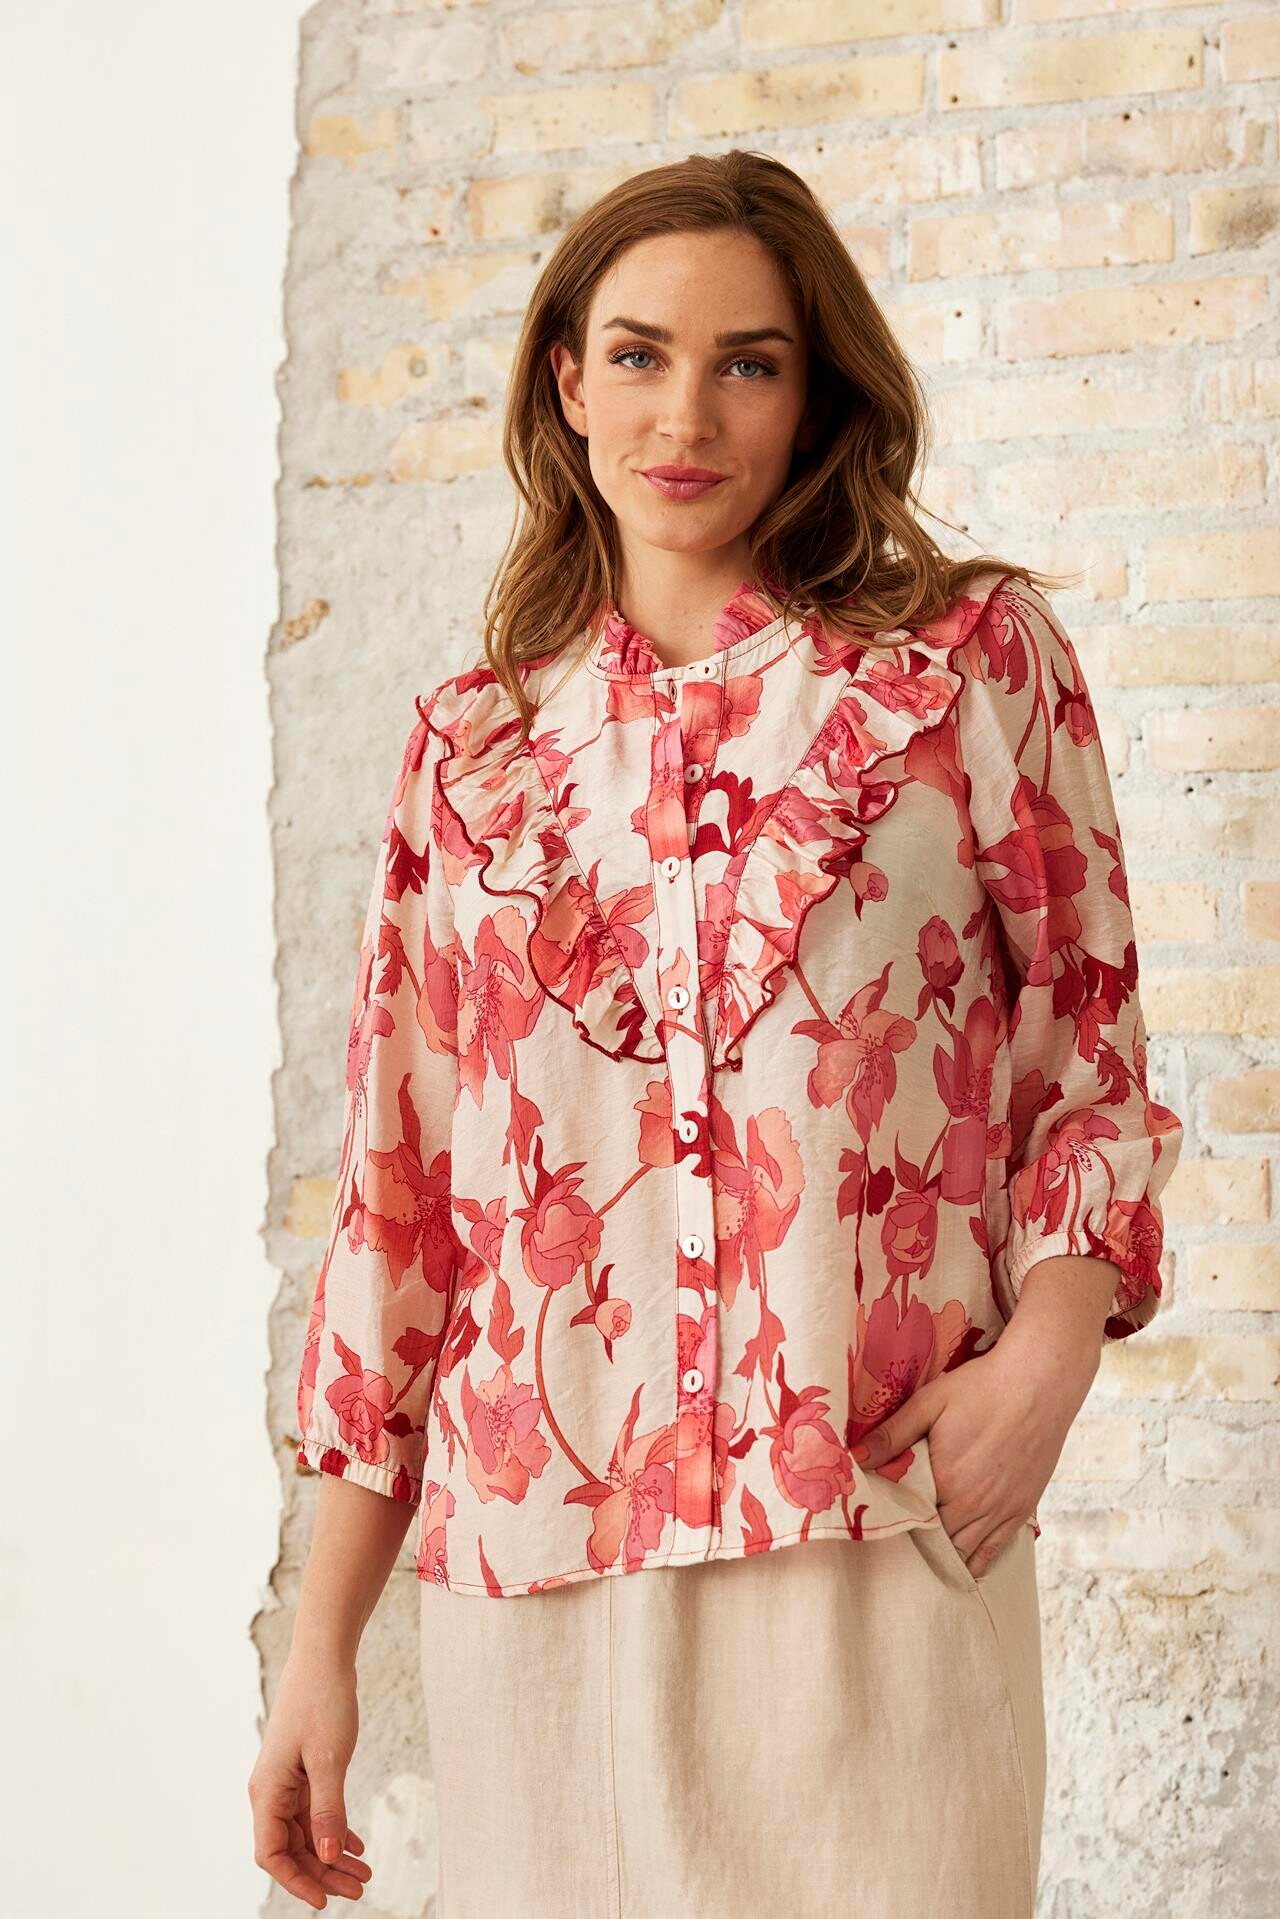 Se IN FRONT Summer Skjorte, Farve: Coral Rose, Størrelse: S, Dame hos Infront Women